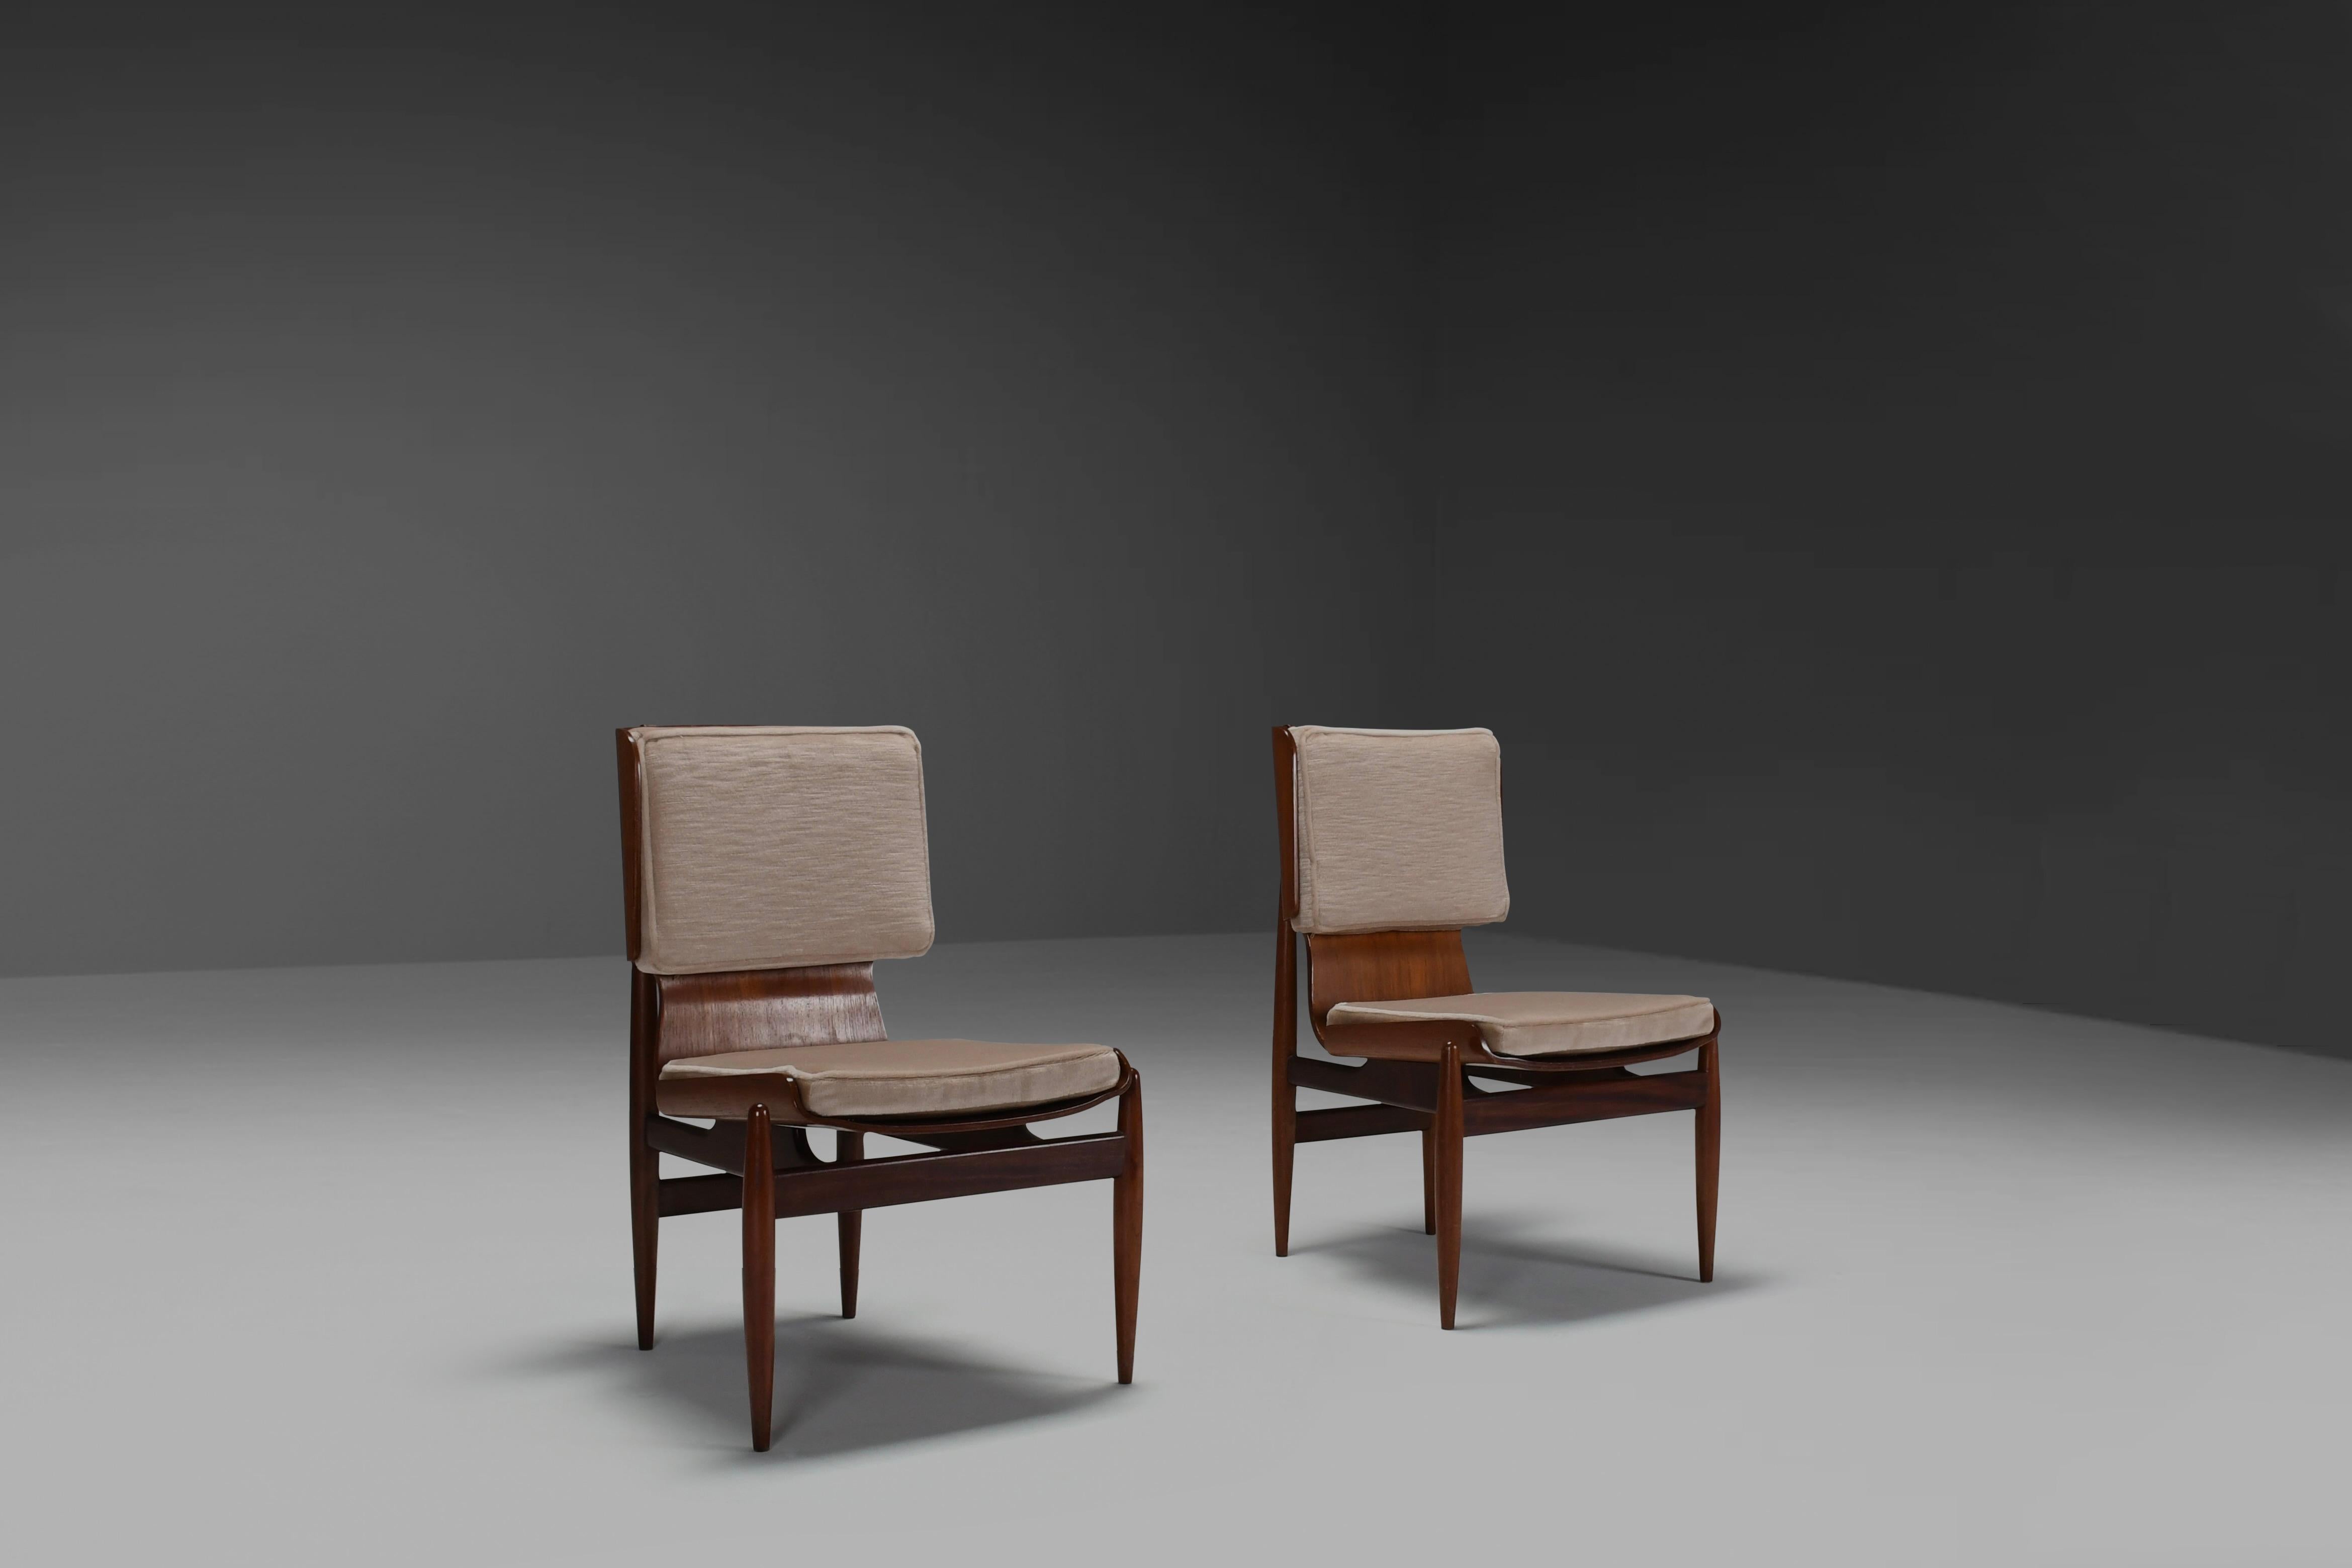 Wunderschön gearbeitete fside Stühle in sehr gutem Zustand.

Hergestellt von Barovero Turino in den 1960er Jahren.

Die Sitzgruppe hat eine Holzstruktur und ist in Wirklichkeit eine verarbeitete, gebogene Sperrholzschale. Die unterschiedlichen